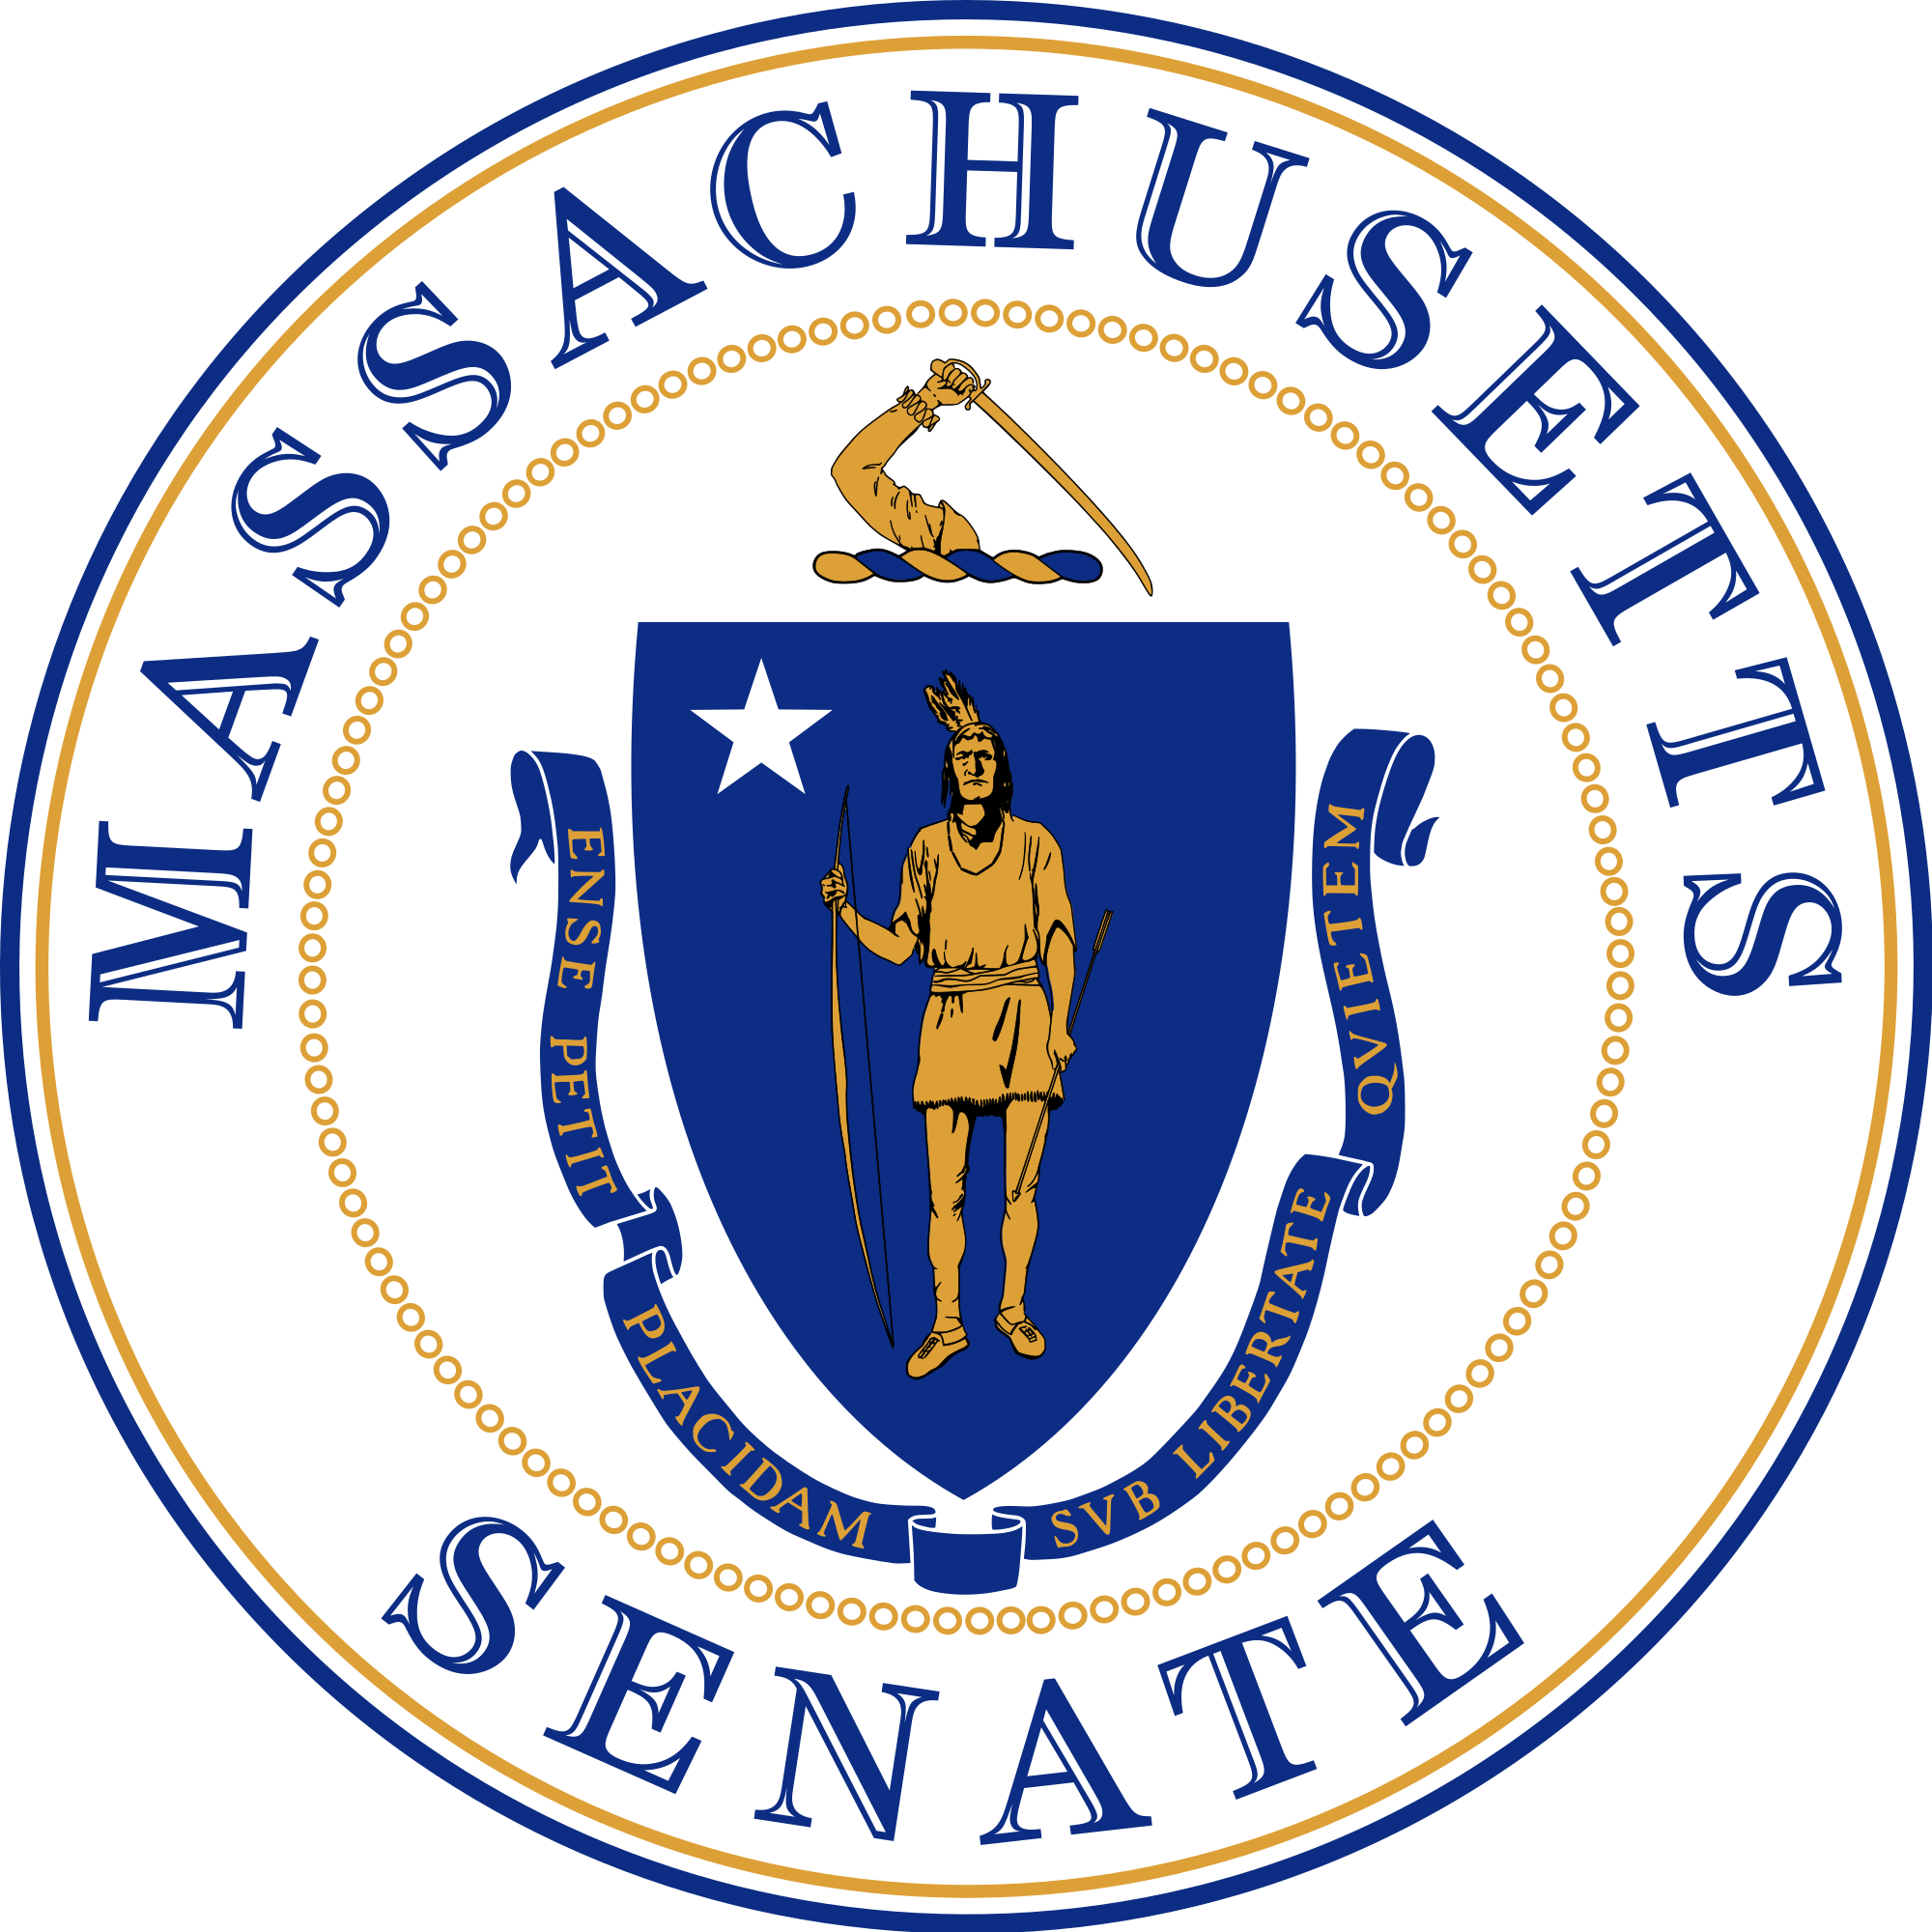 Presentation to Massachusetts Senate